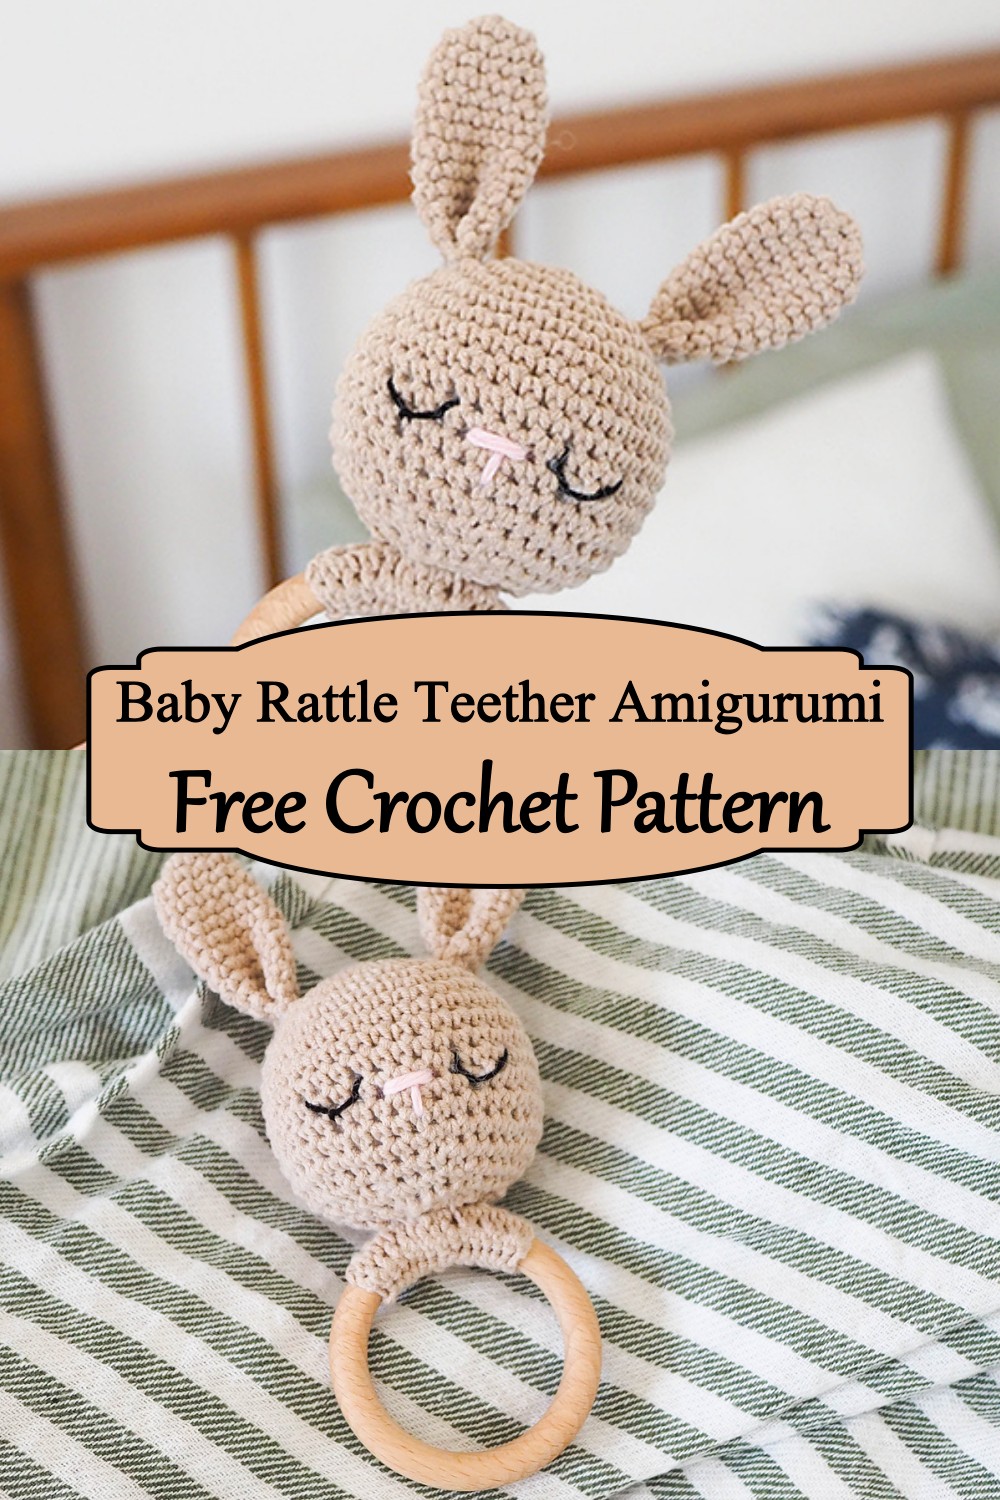 Baby Rattle Teether Amigurumi